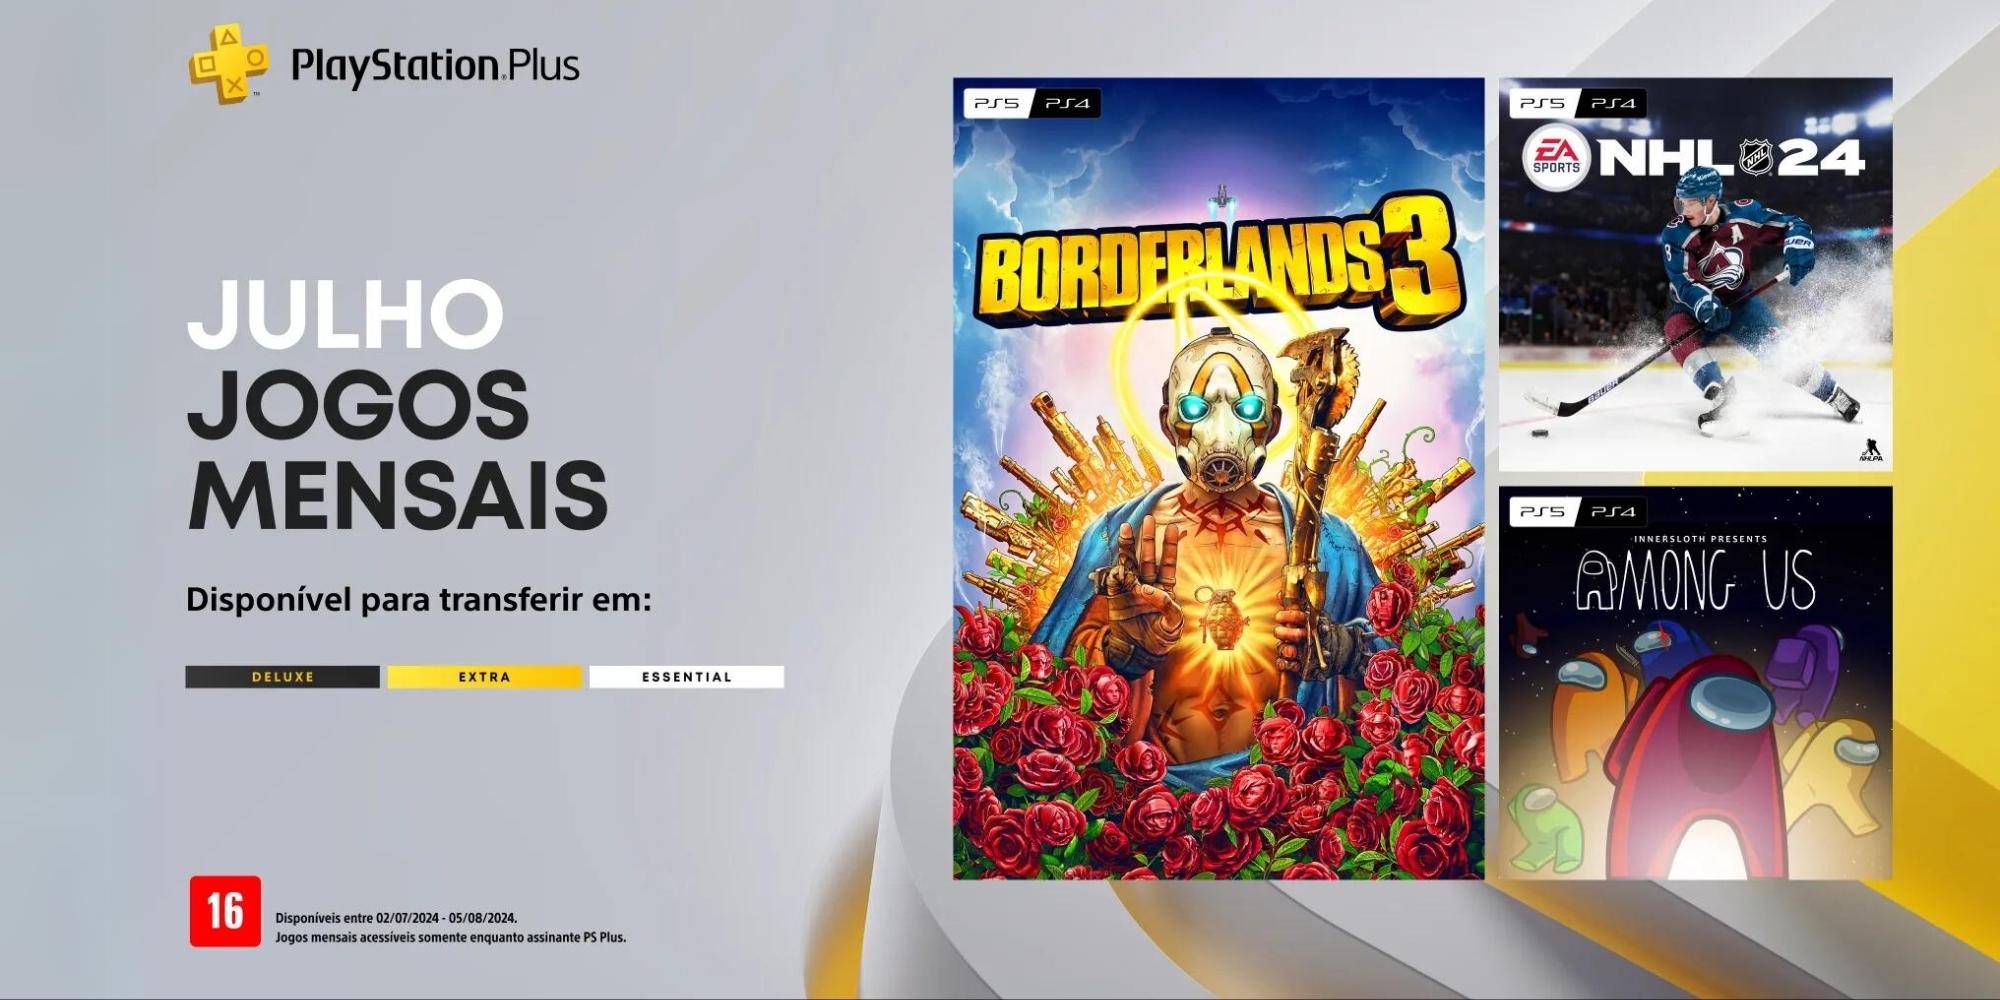 Cover Image for Últimas Horas para Jogar os Jogos de Junho na PlayStation Plus e os Jogos Mensais de Julho